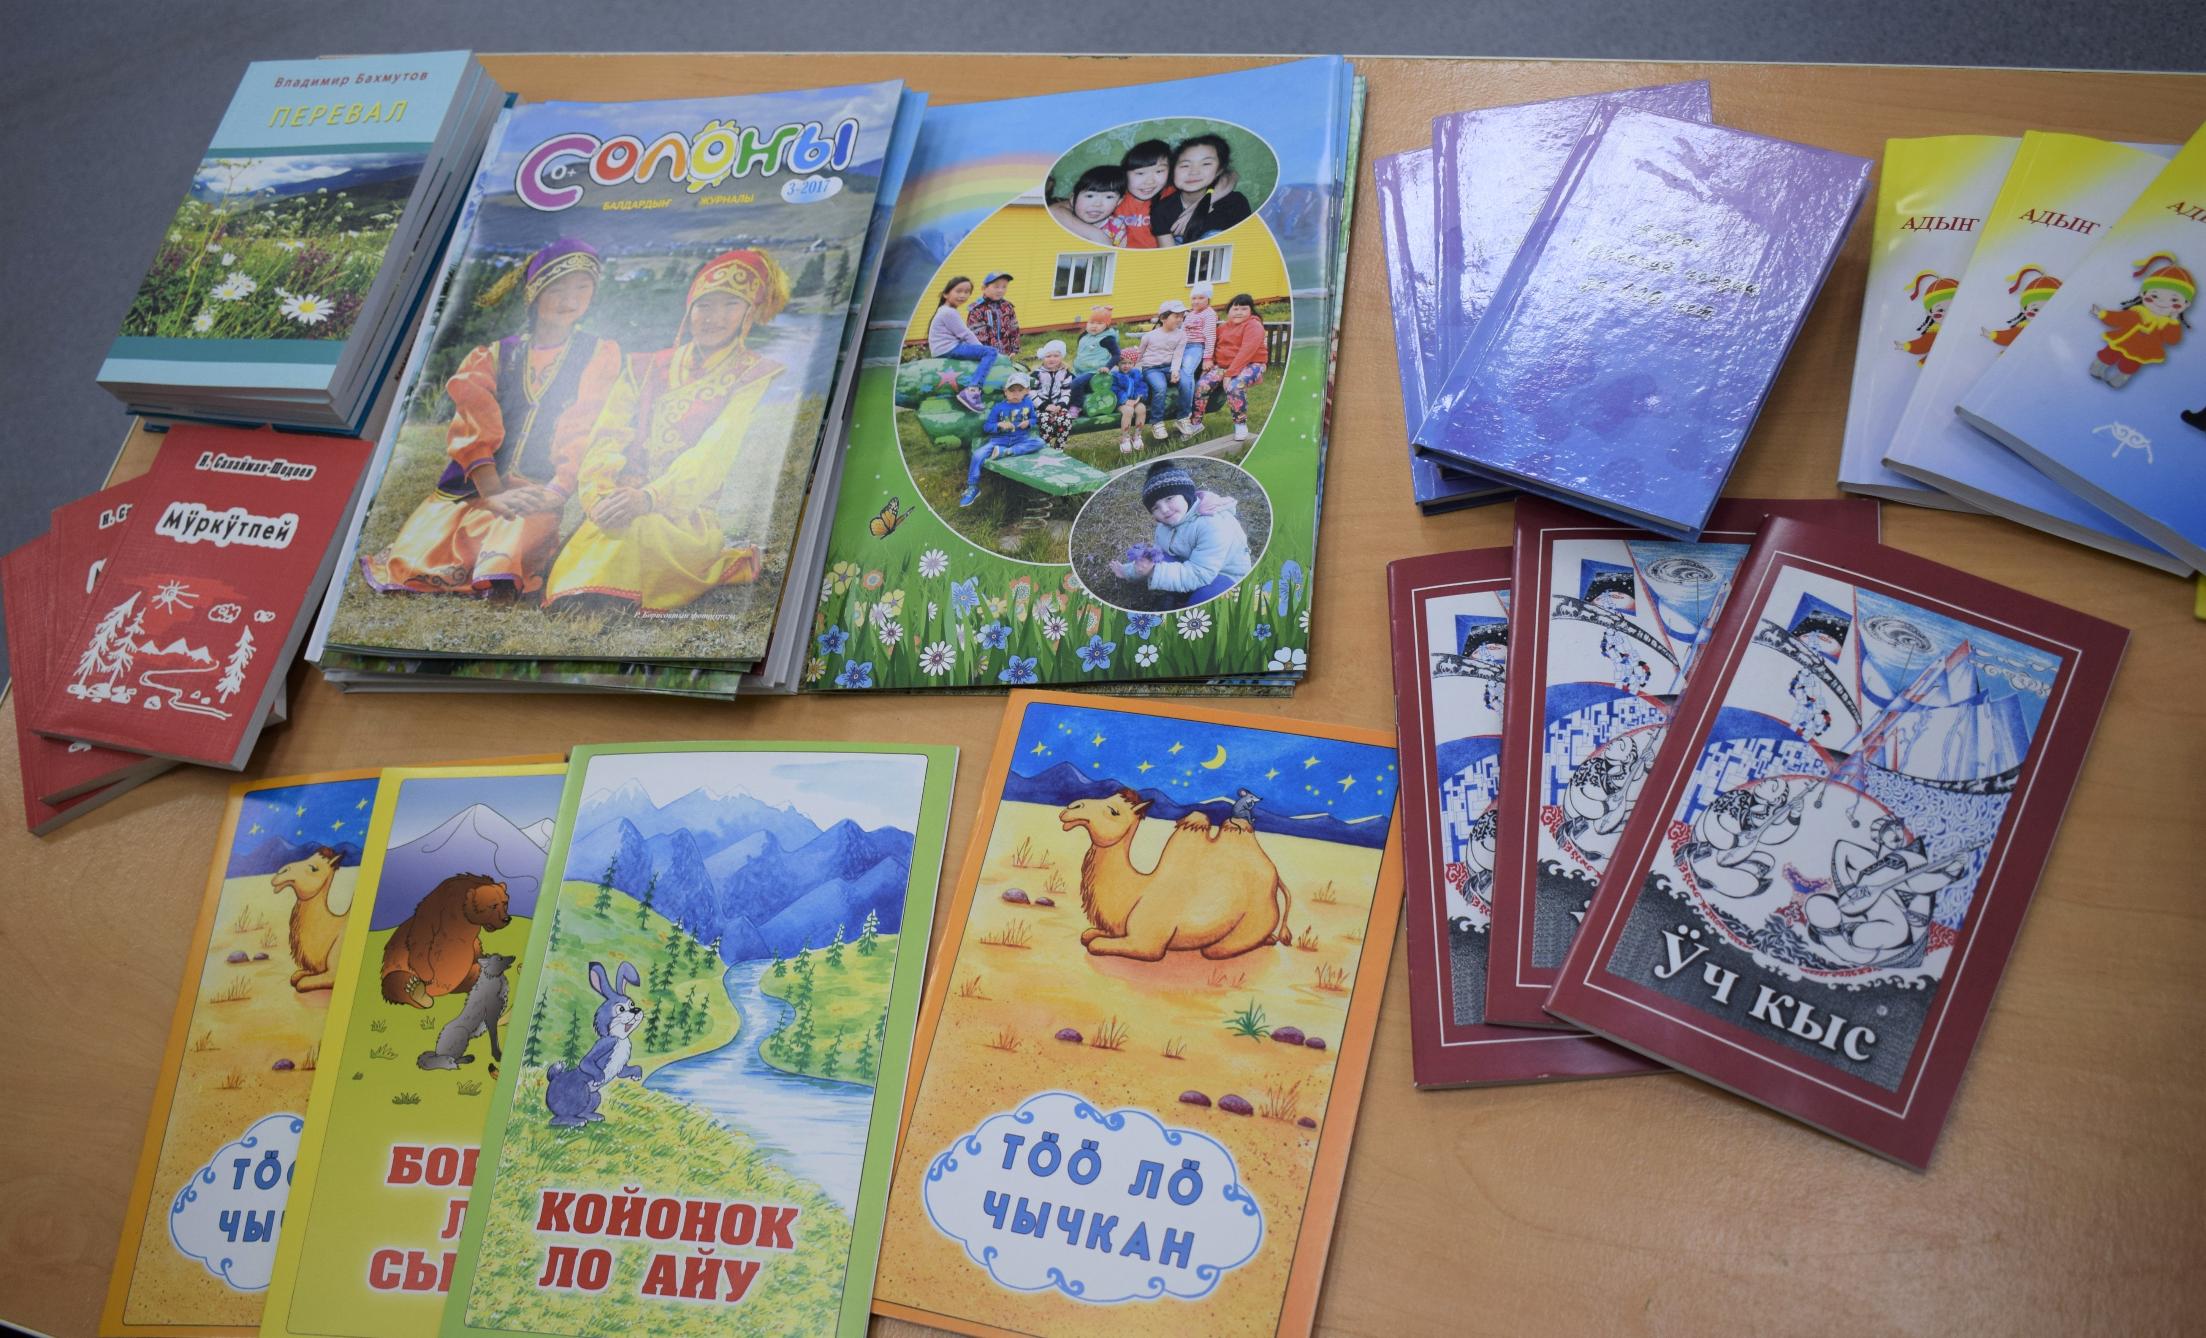 Неделя детской книги началась в Горно-Алтайске